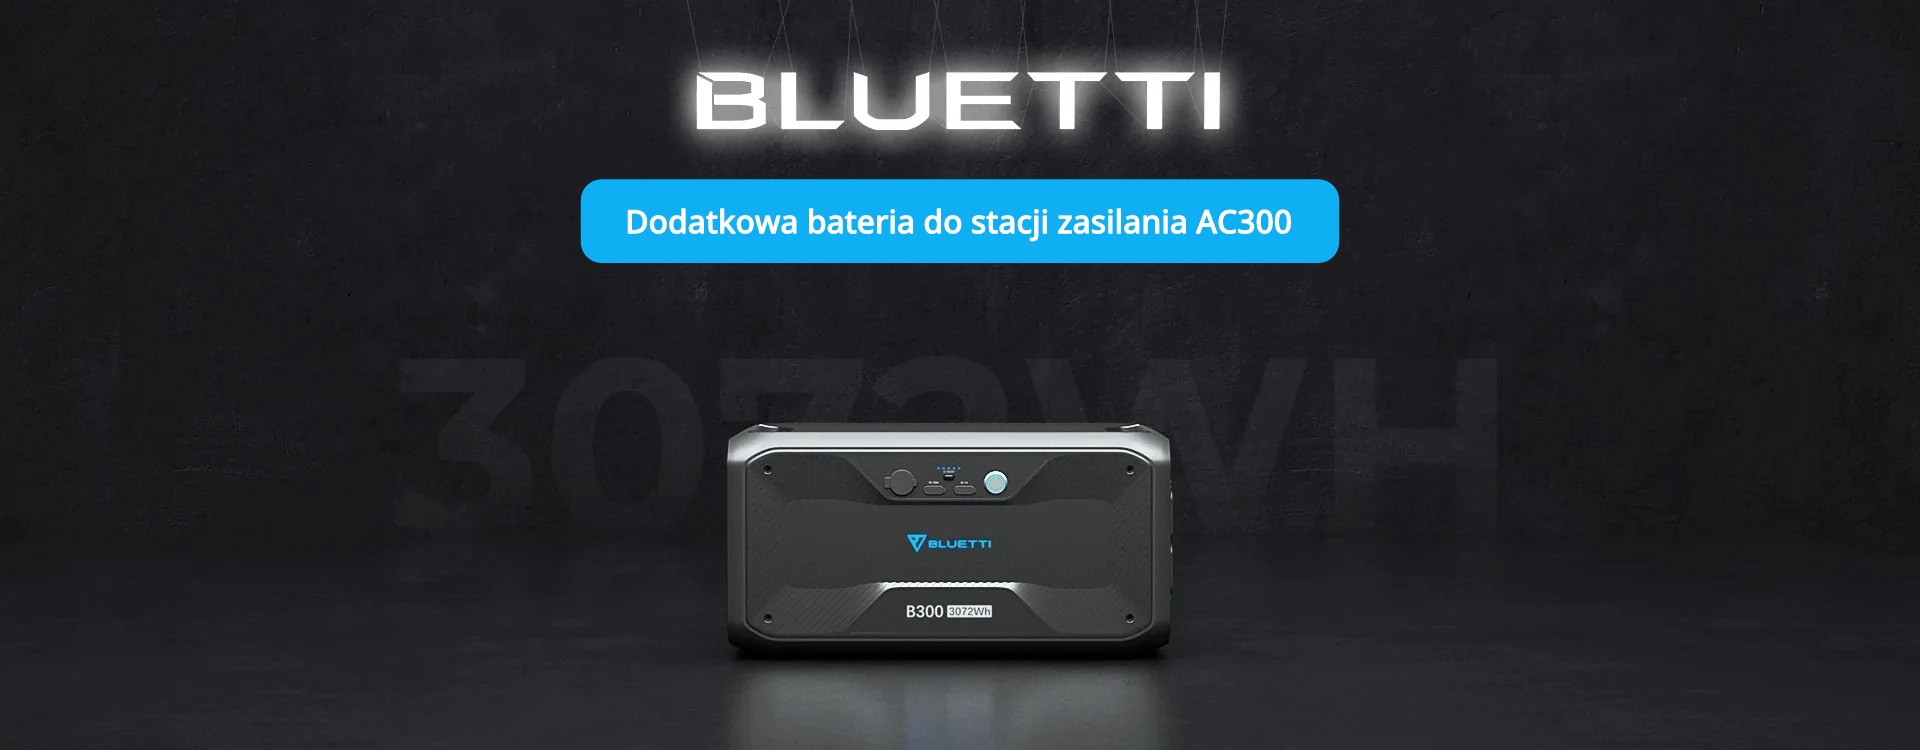 Bluetti bateria B300